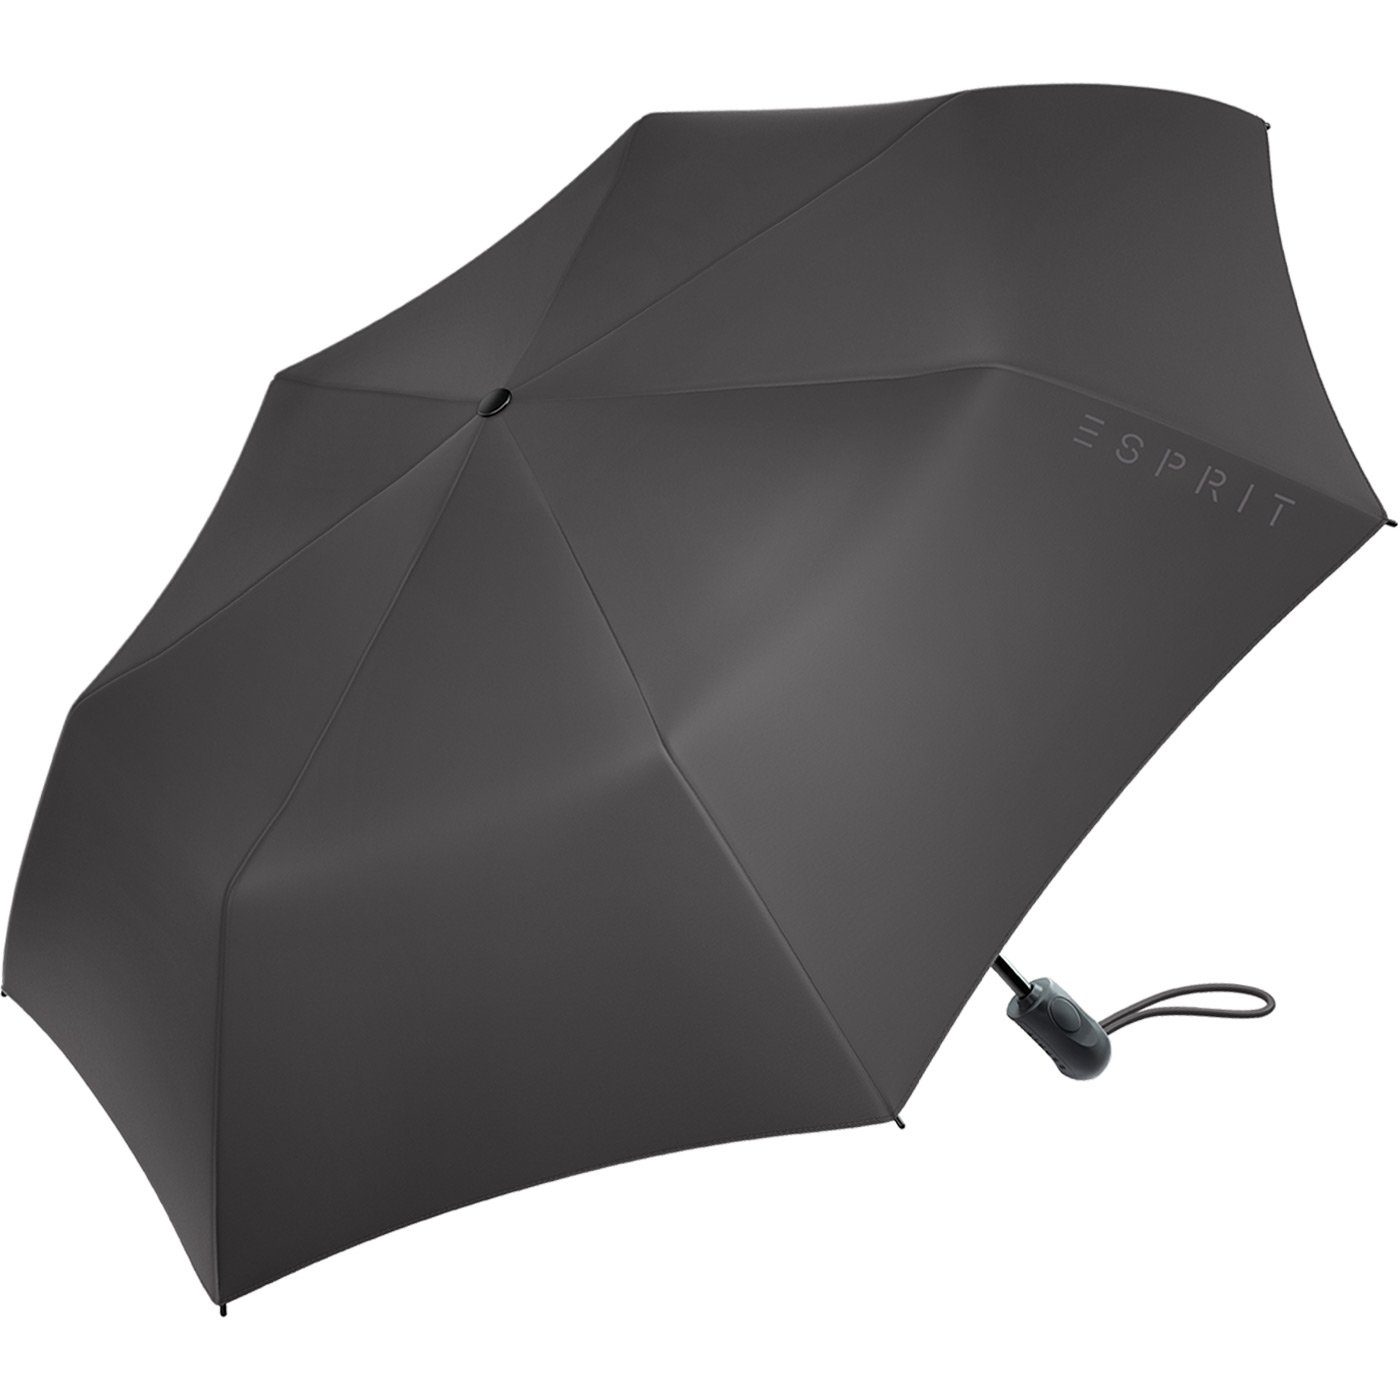 Easymatic schwarz Automatik, Auf-Zu Esprit Schirm Light mit stabil Taschenregenschirm und praktisch